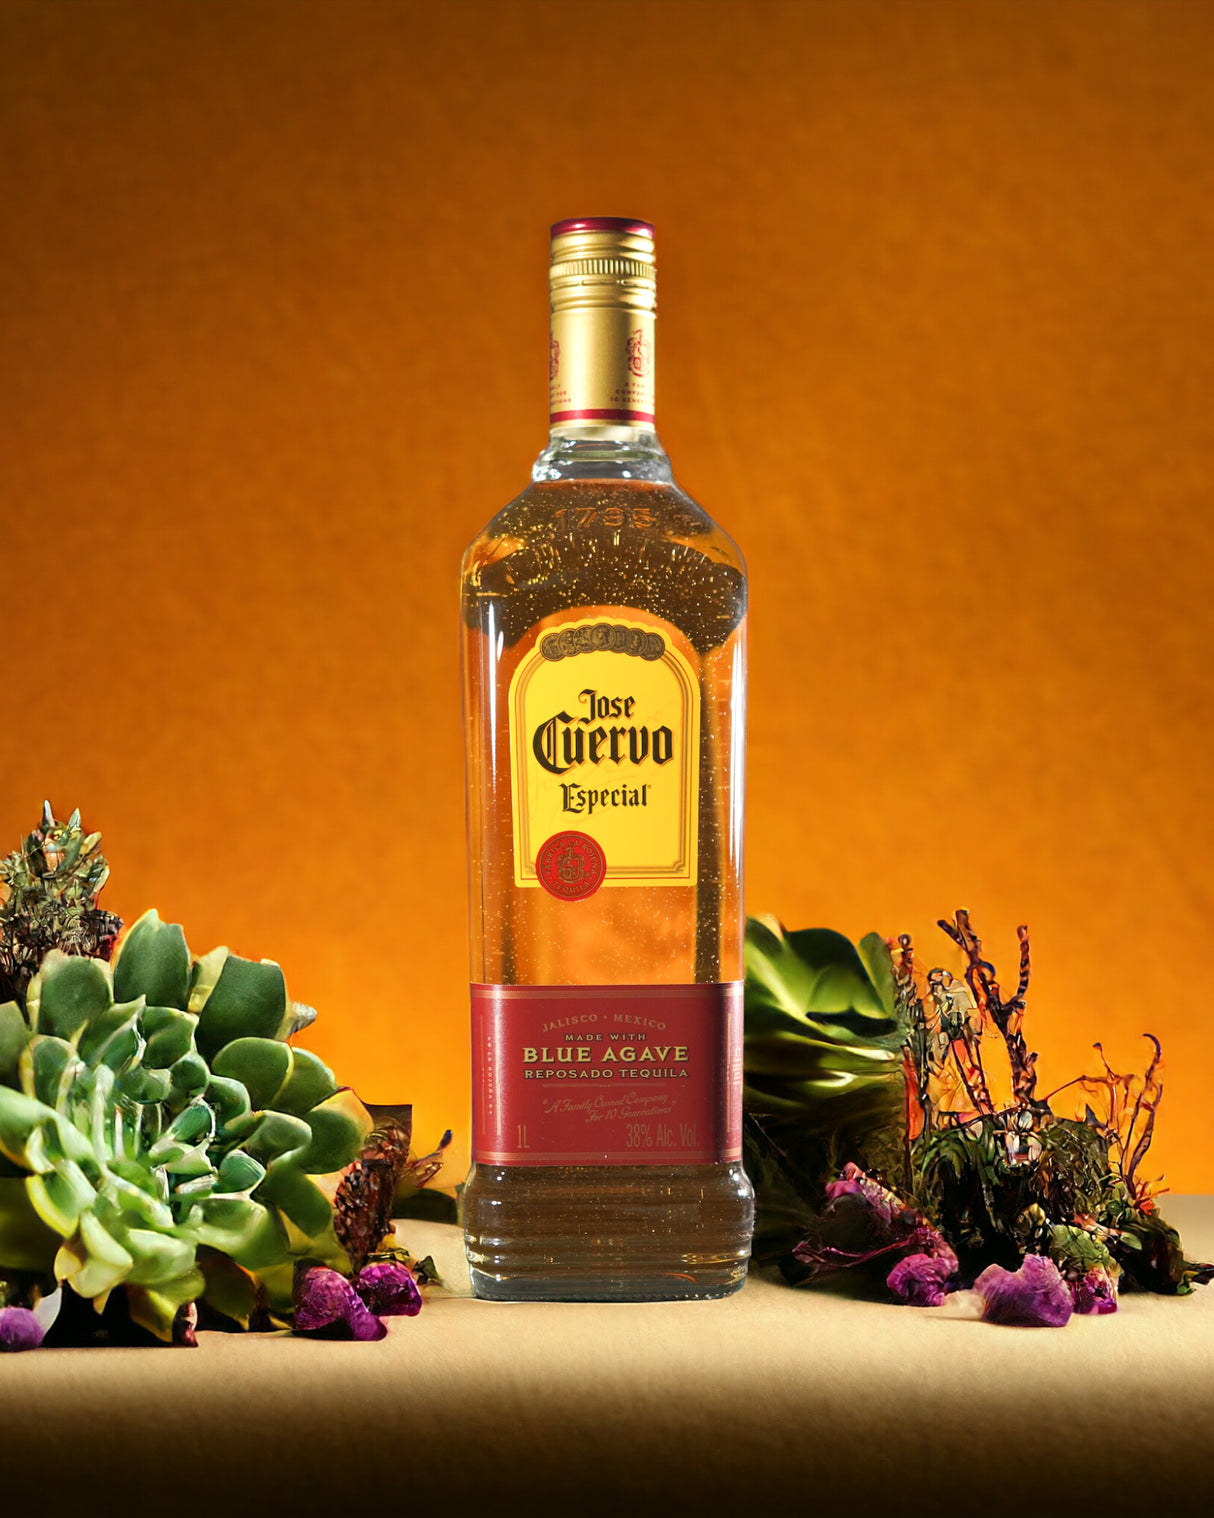 Jose Cuervo Special Reposado Tequila